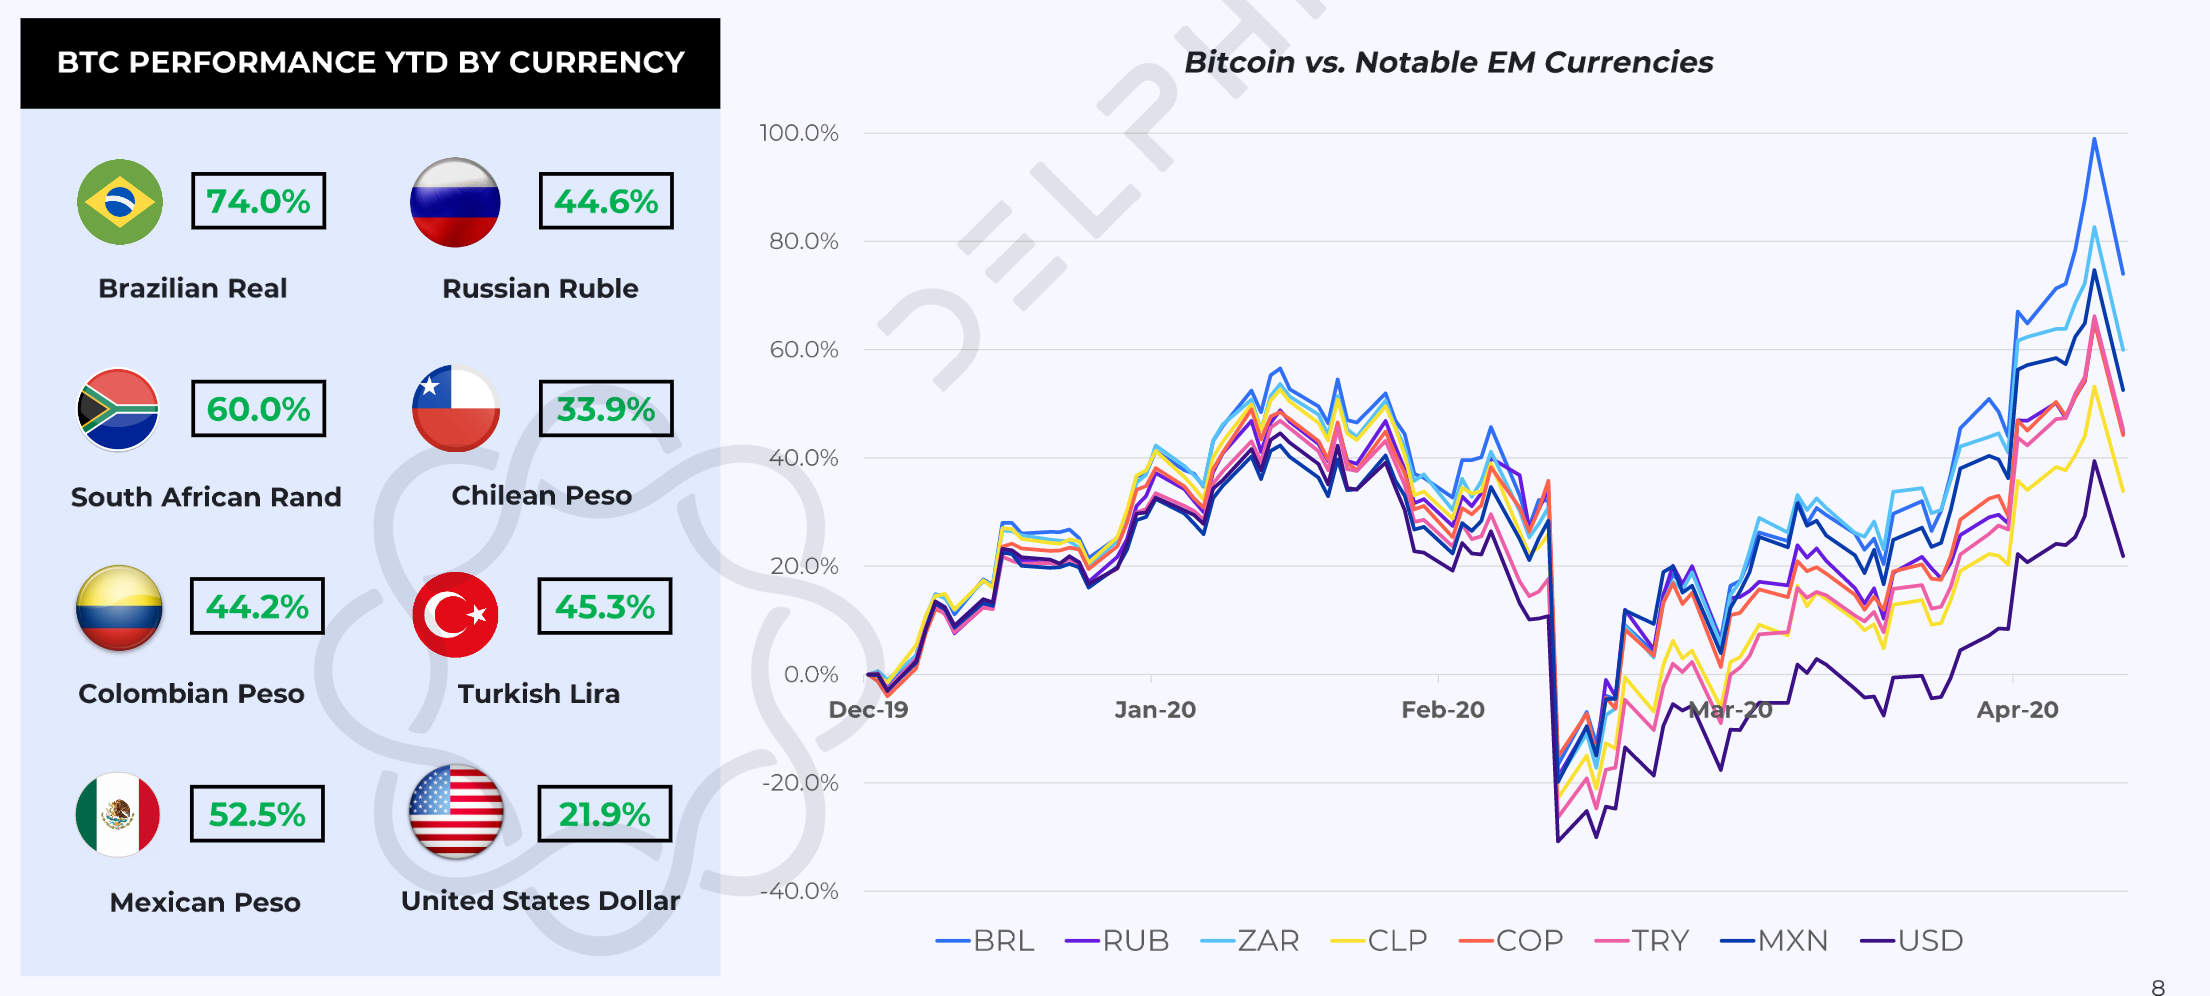 Bitcoin vs. Notable EM Currencies. (Source: Delphi Digital)